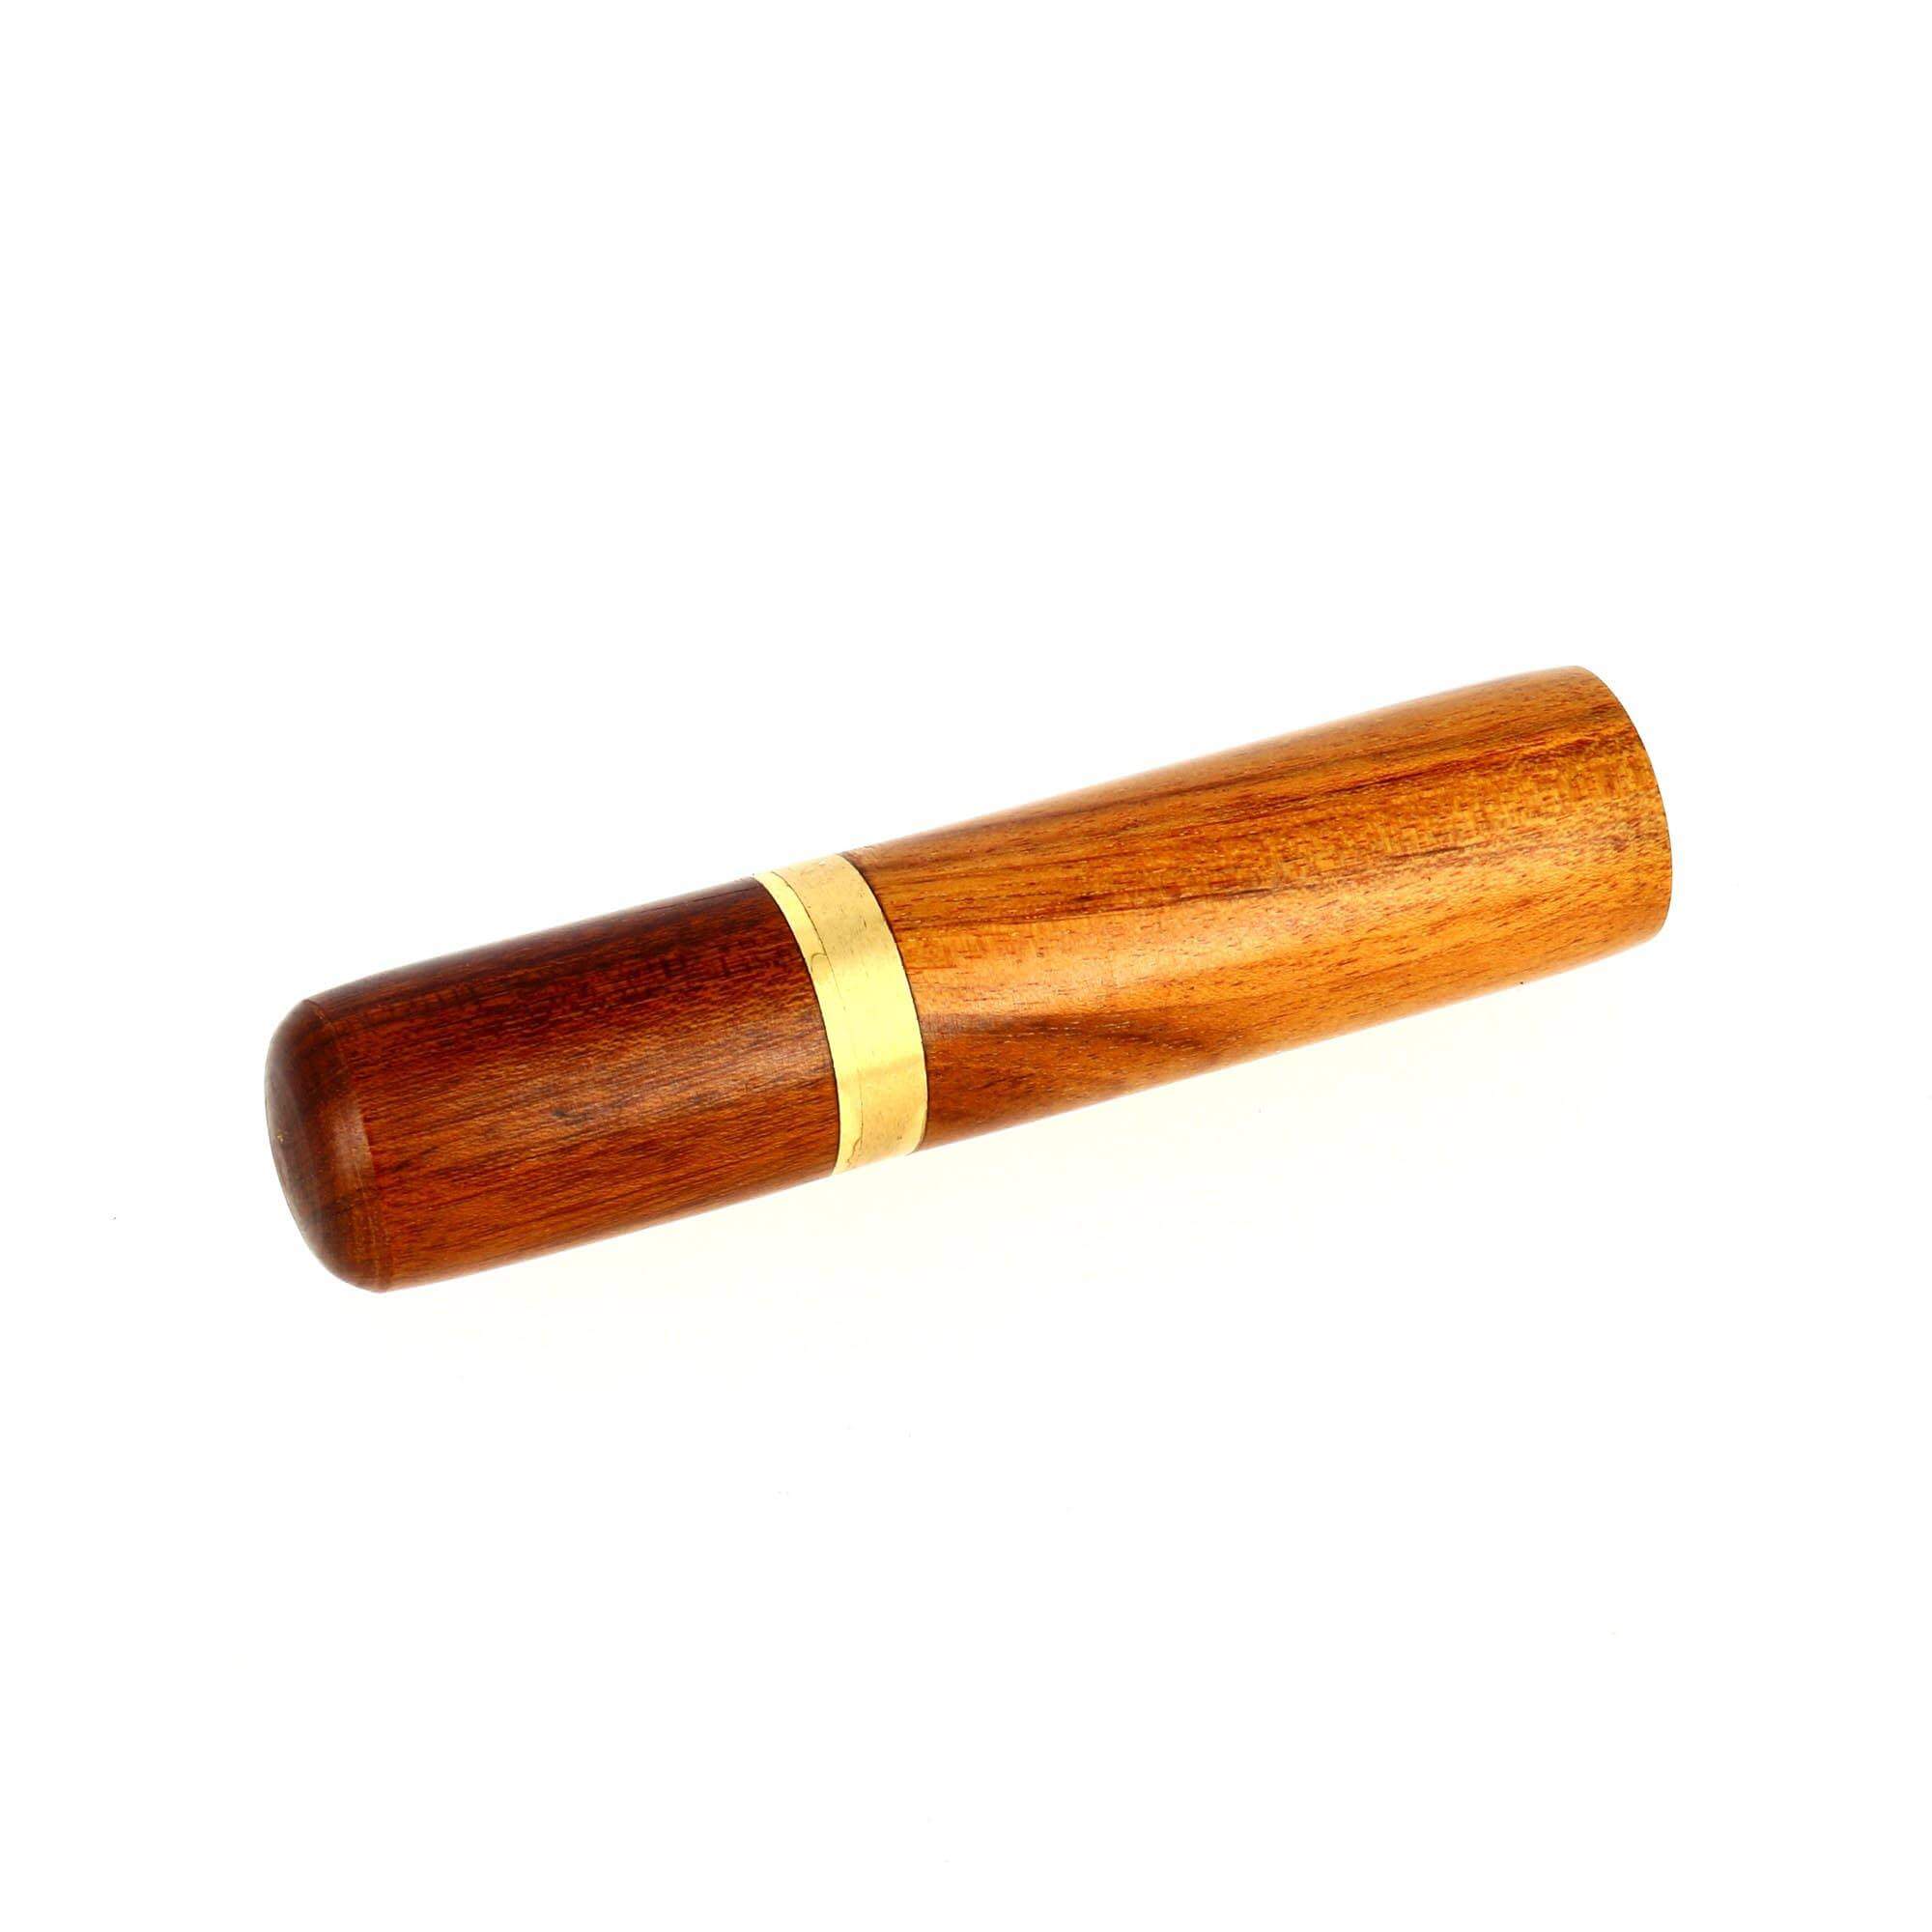 Pince à coudre en bois ciré et verni - Longueur 1,05 m - VERGEZ